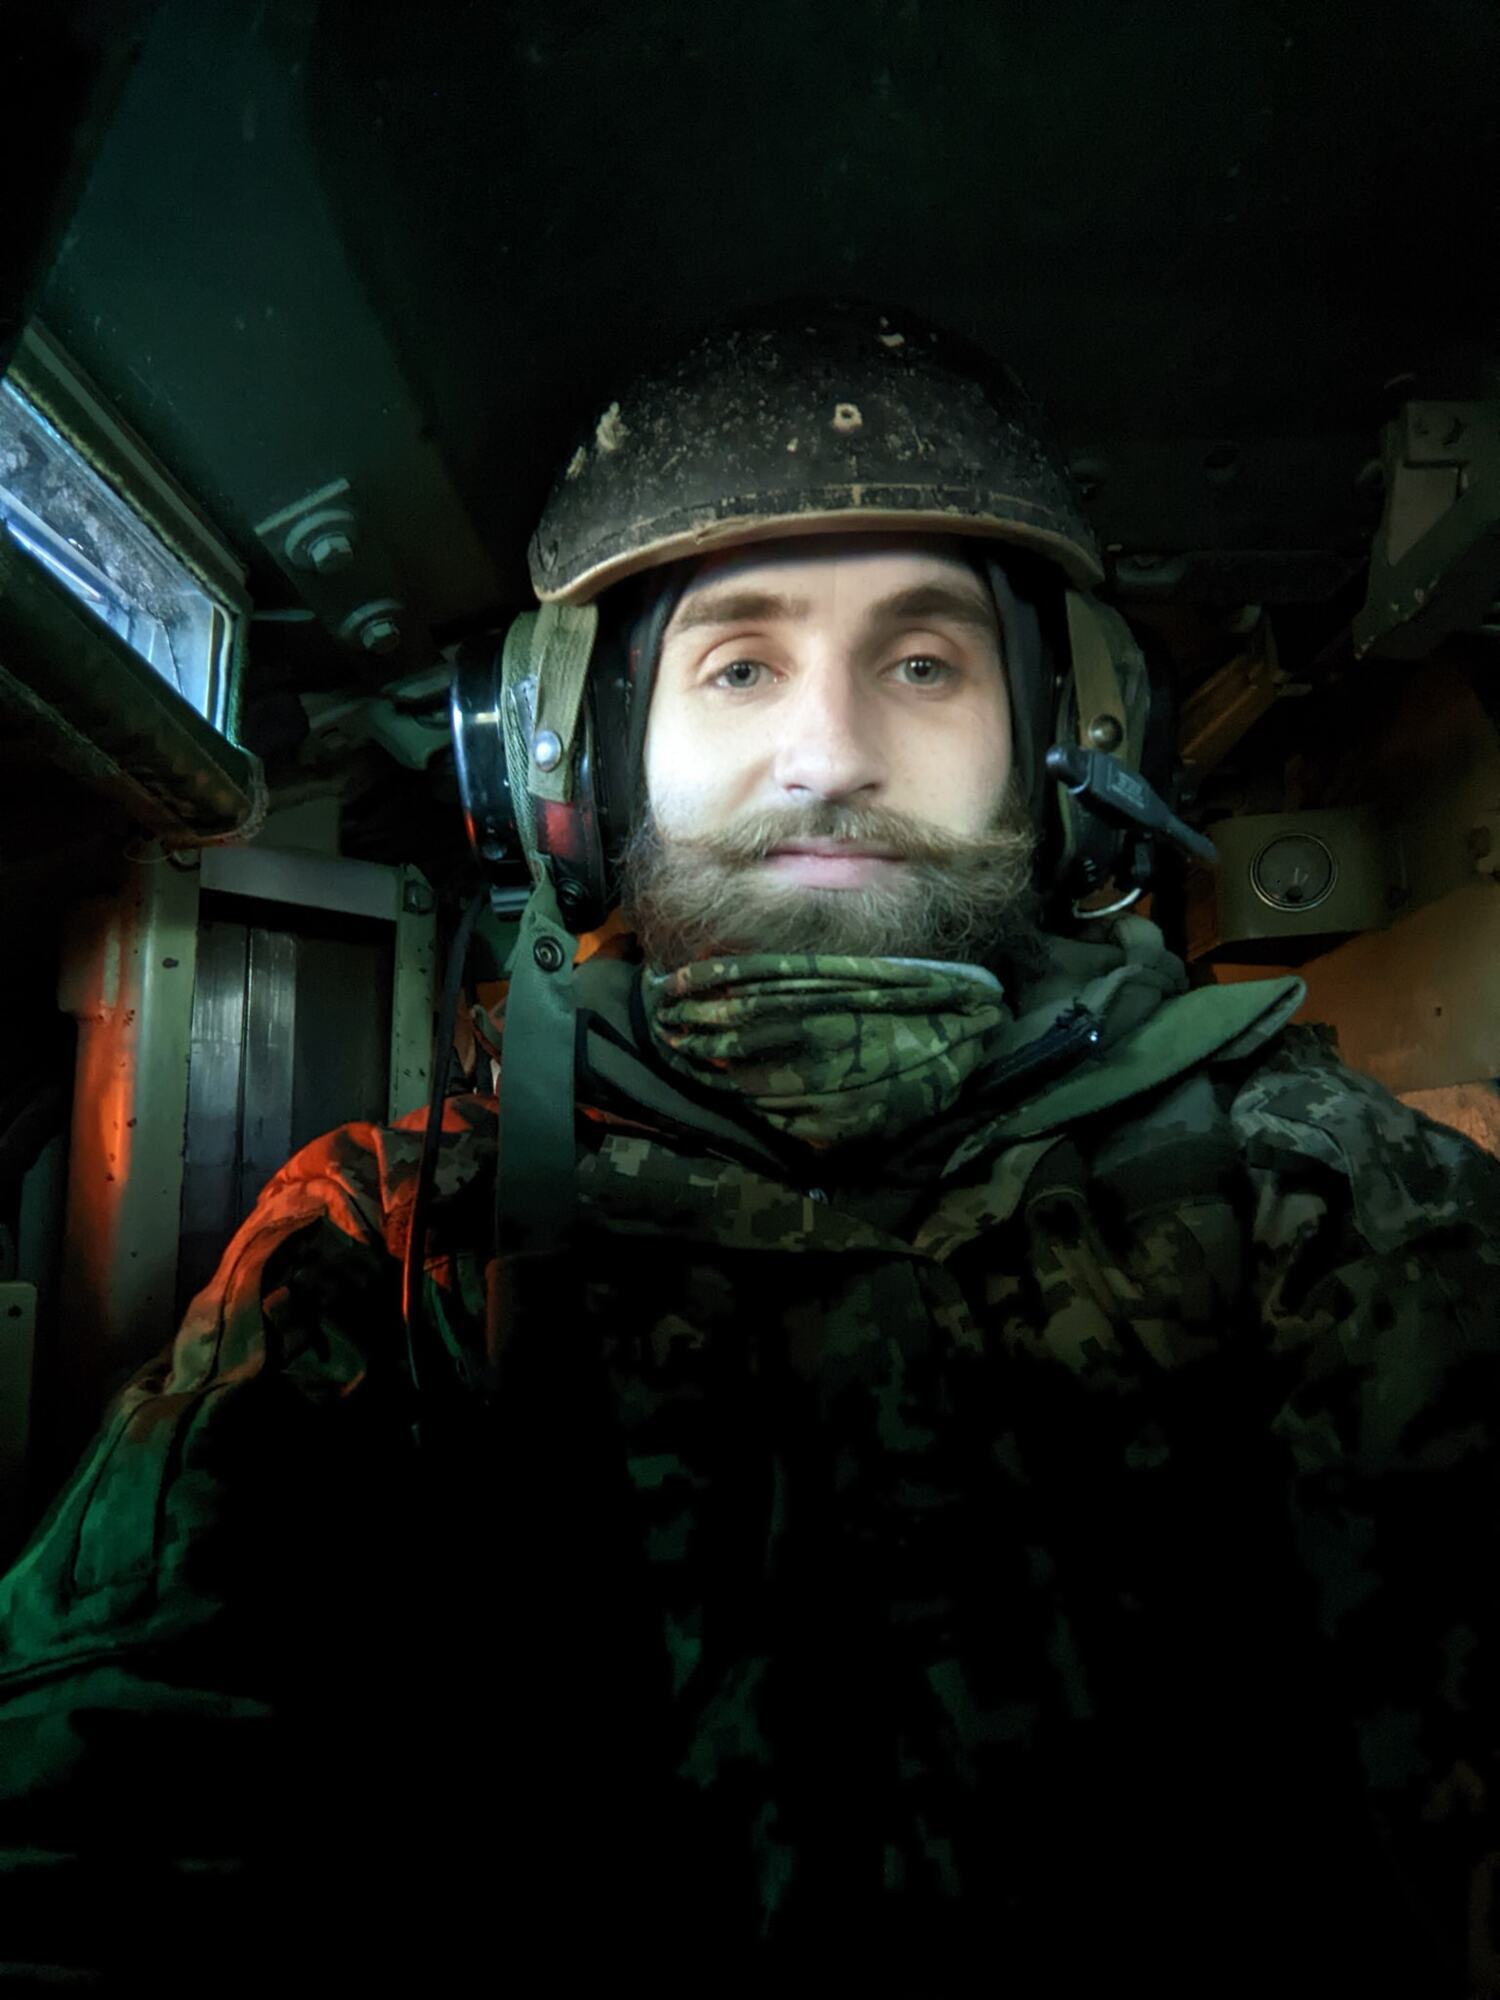 На войне героически погиб украинский музыкант, пластун и активист Андрей Чепиль. Фото